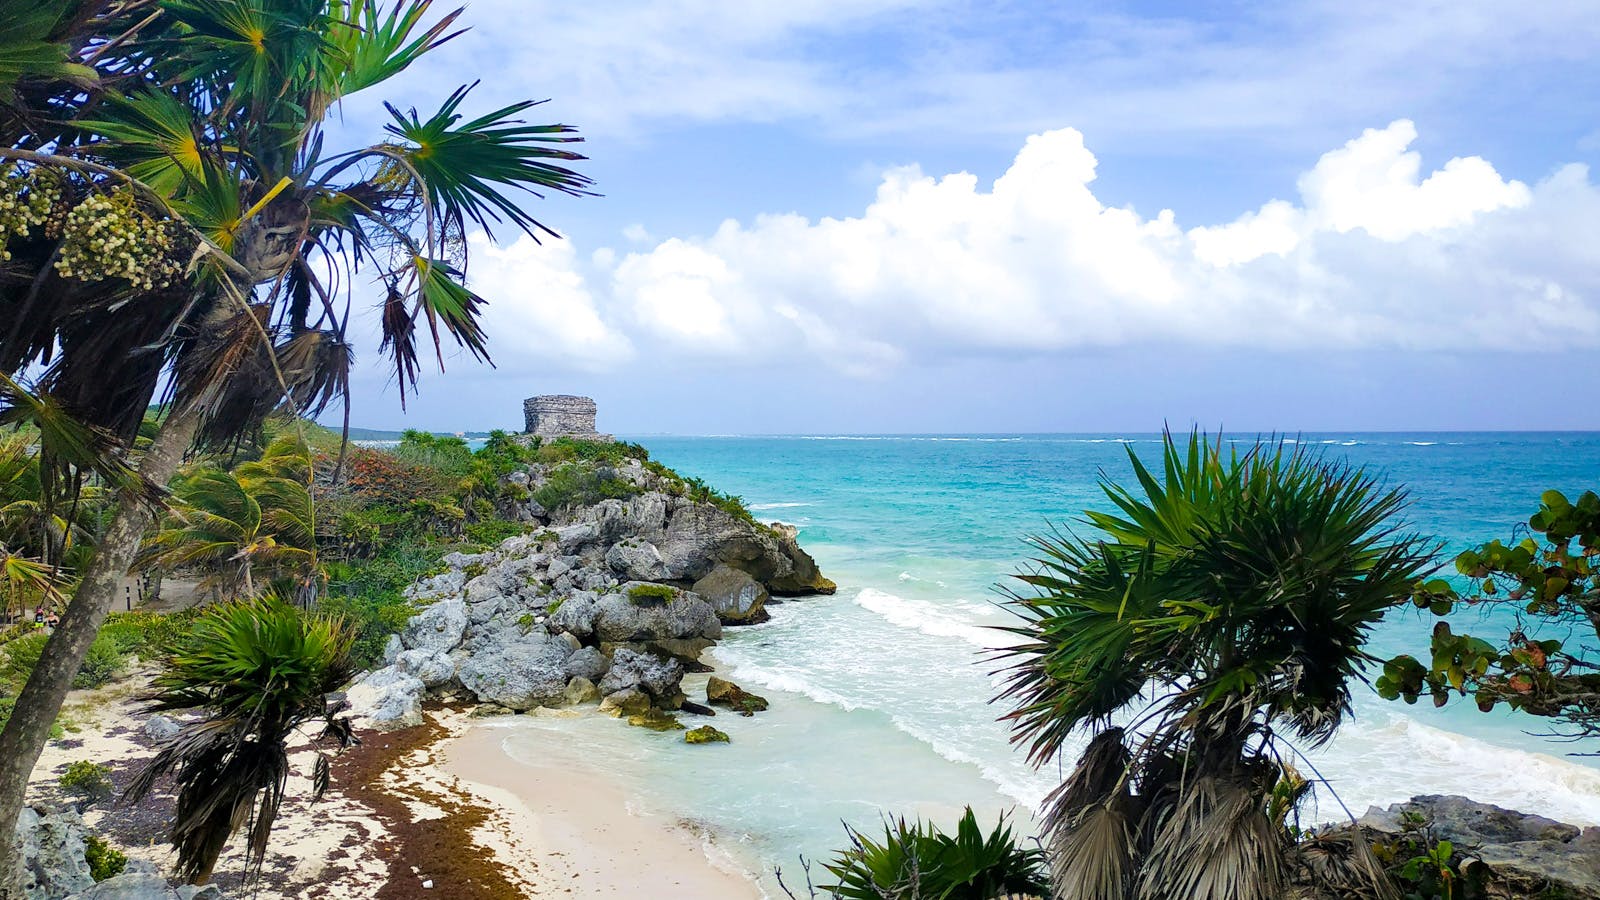 Tulum gehört zu unseren Lieblingsorten in Mexiko. Cenoten, Strand, Kulinarik - hier findest du einfach alles.